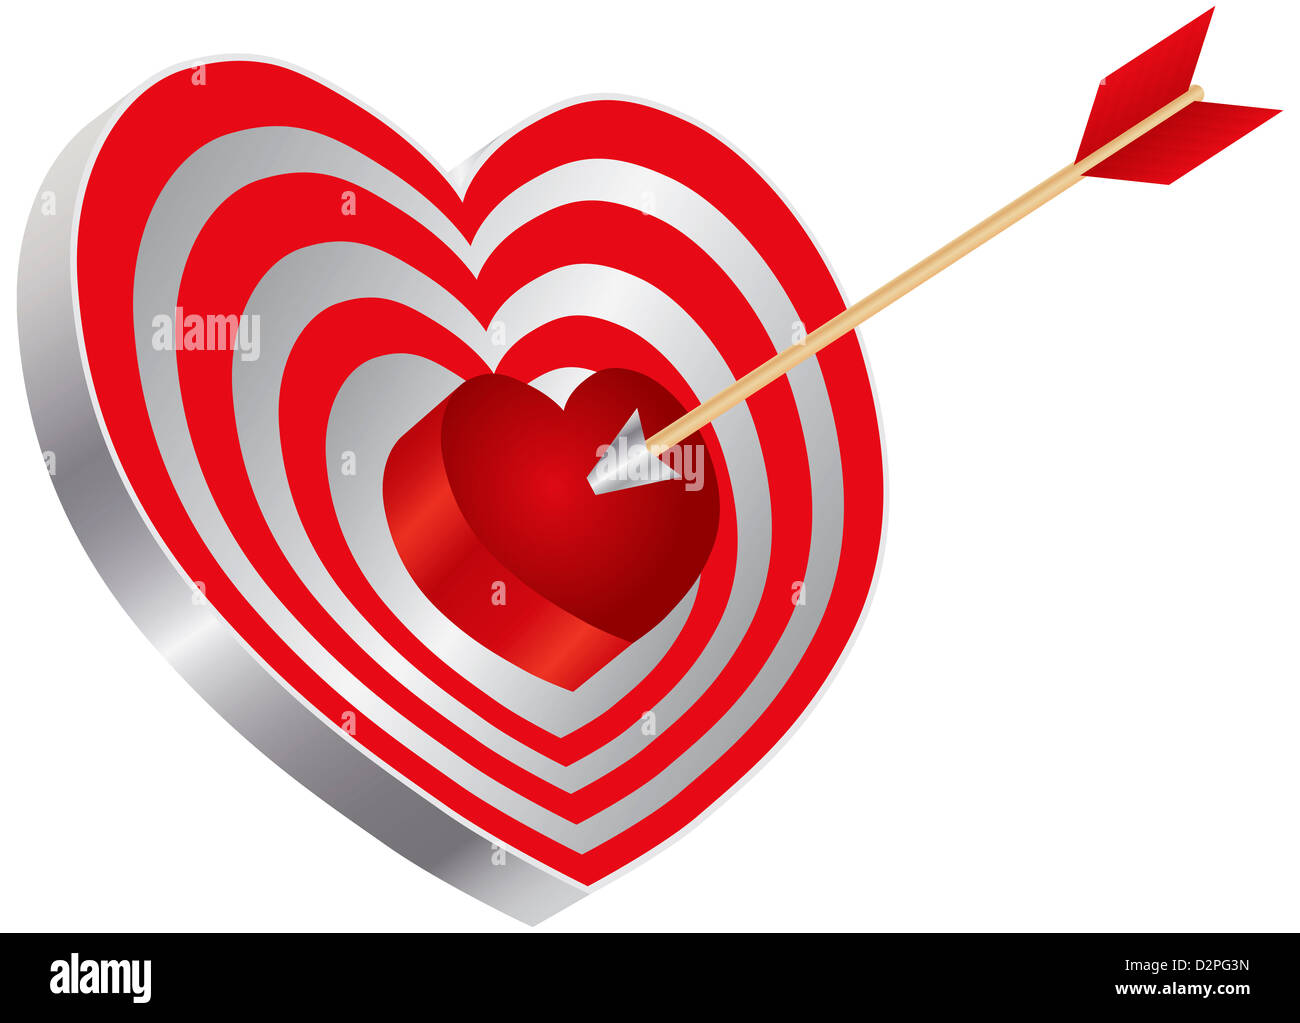 Pfeil auf Bogenschießen rotes Herz Form Target Board Bullseye isoliert auf weißem Hintergrund Illustration Stockfoto